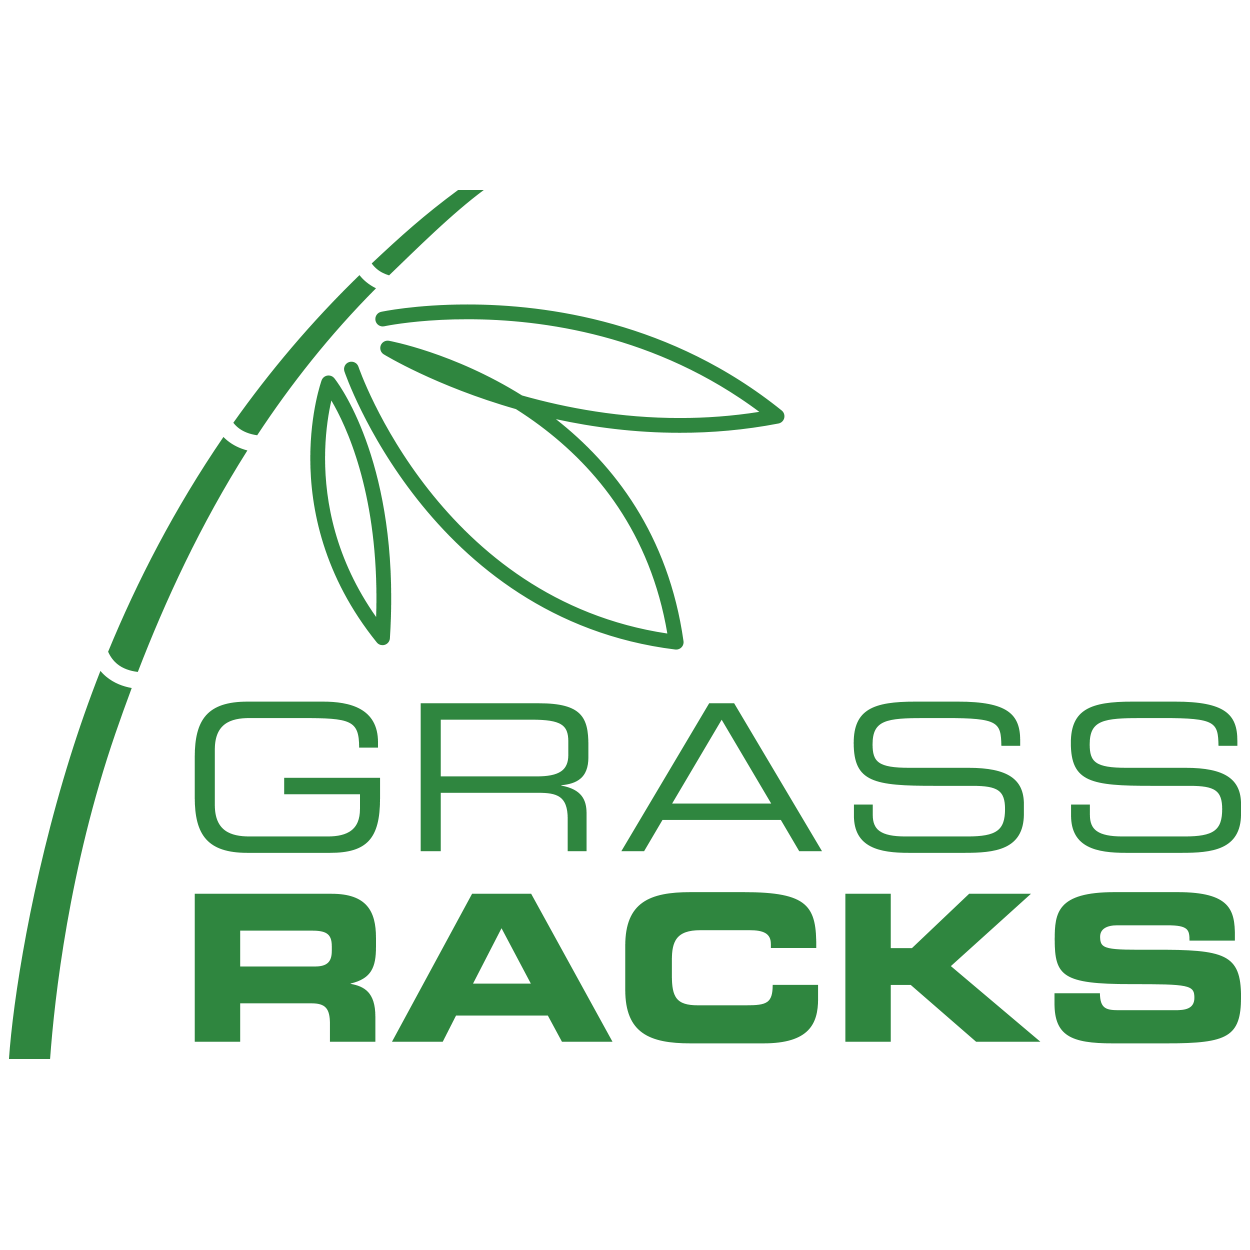 Grassracks Logo